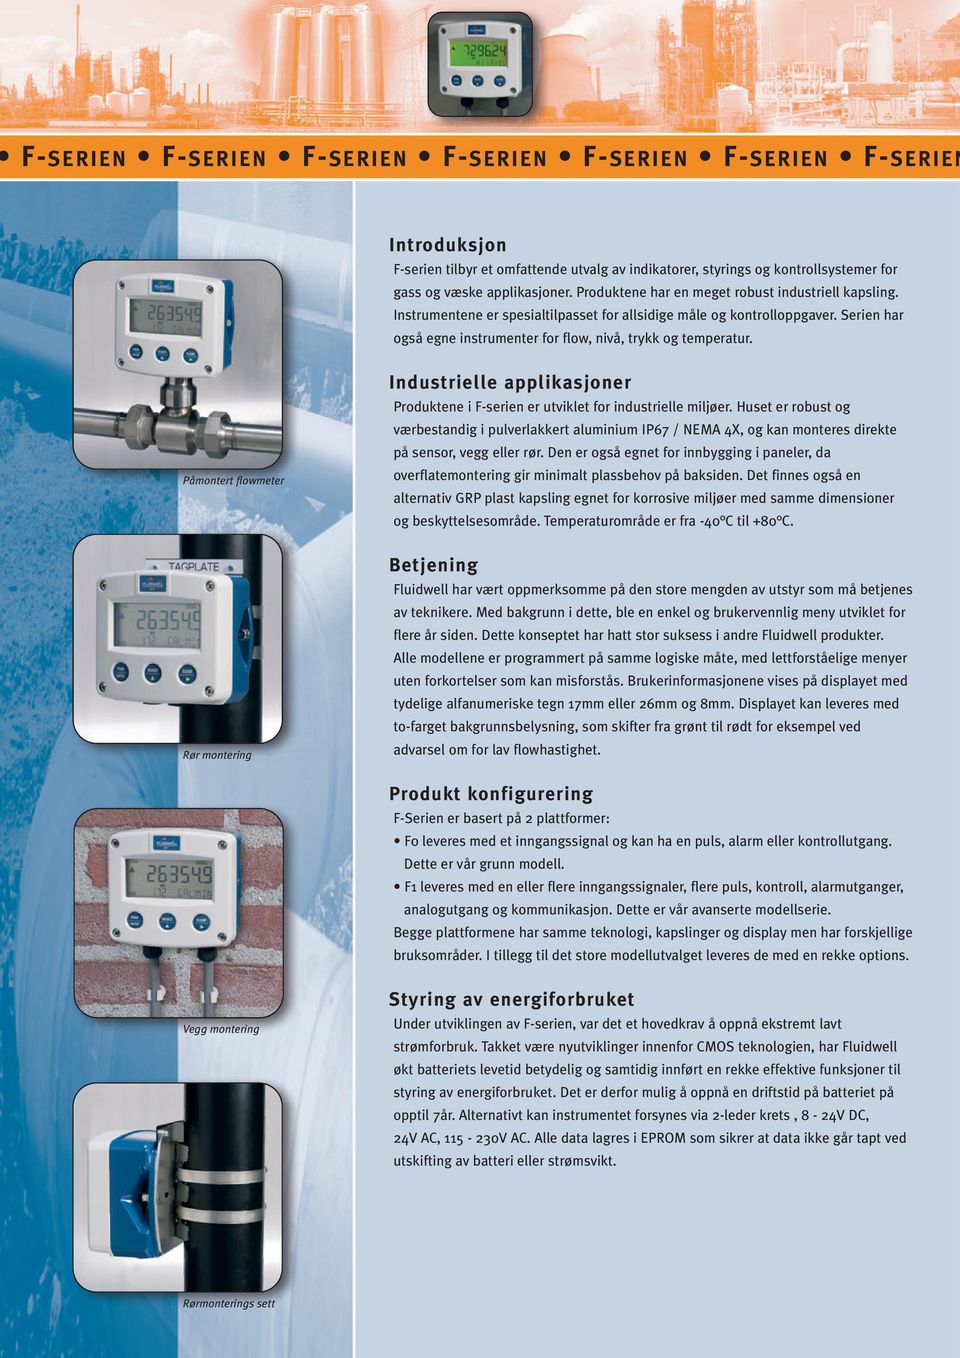 Påmontert flowmeter Rør montering Industrielle applikasjoner Produktene i F-serien er utviklet for industrielle miljøer.